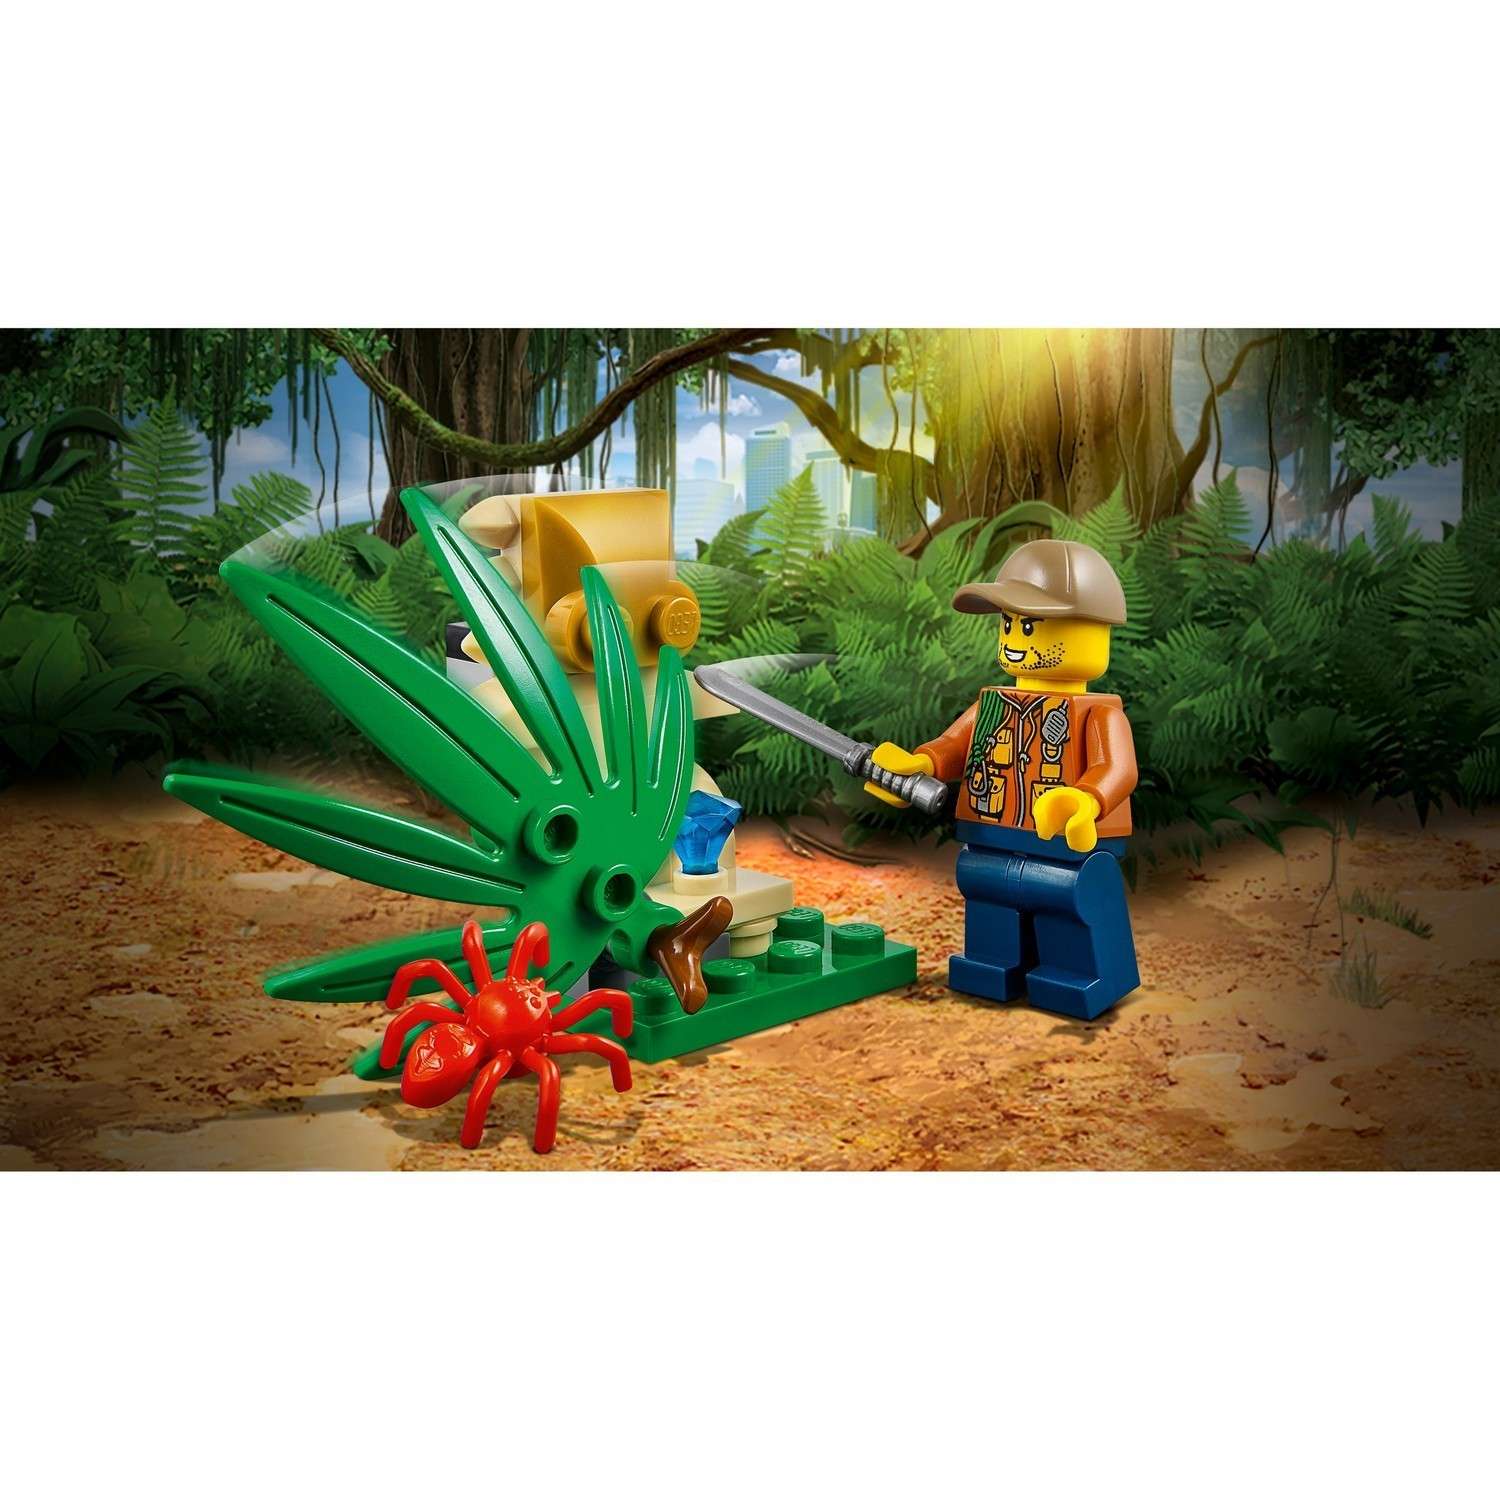 Конструктор LEGO City Jungle Explorers Багги для поездок по джунглям (60156) - фото 6